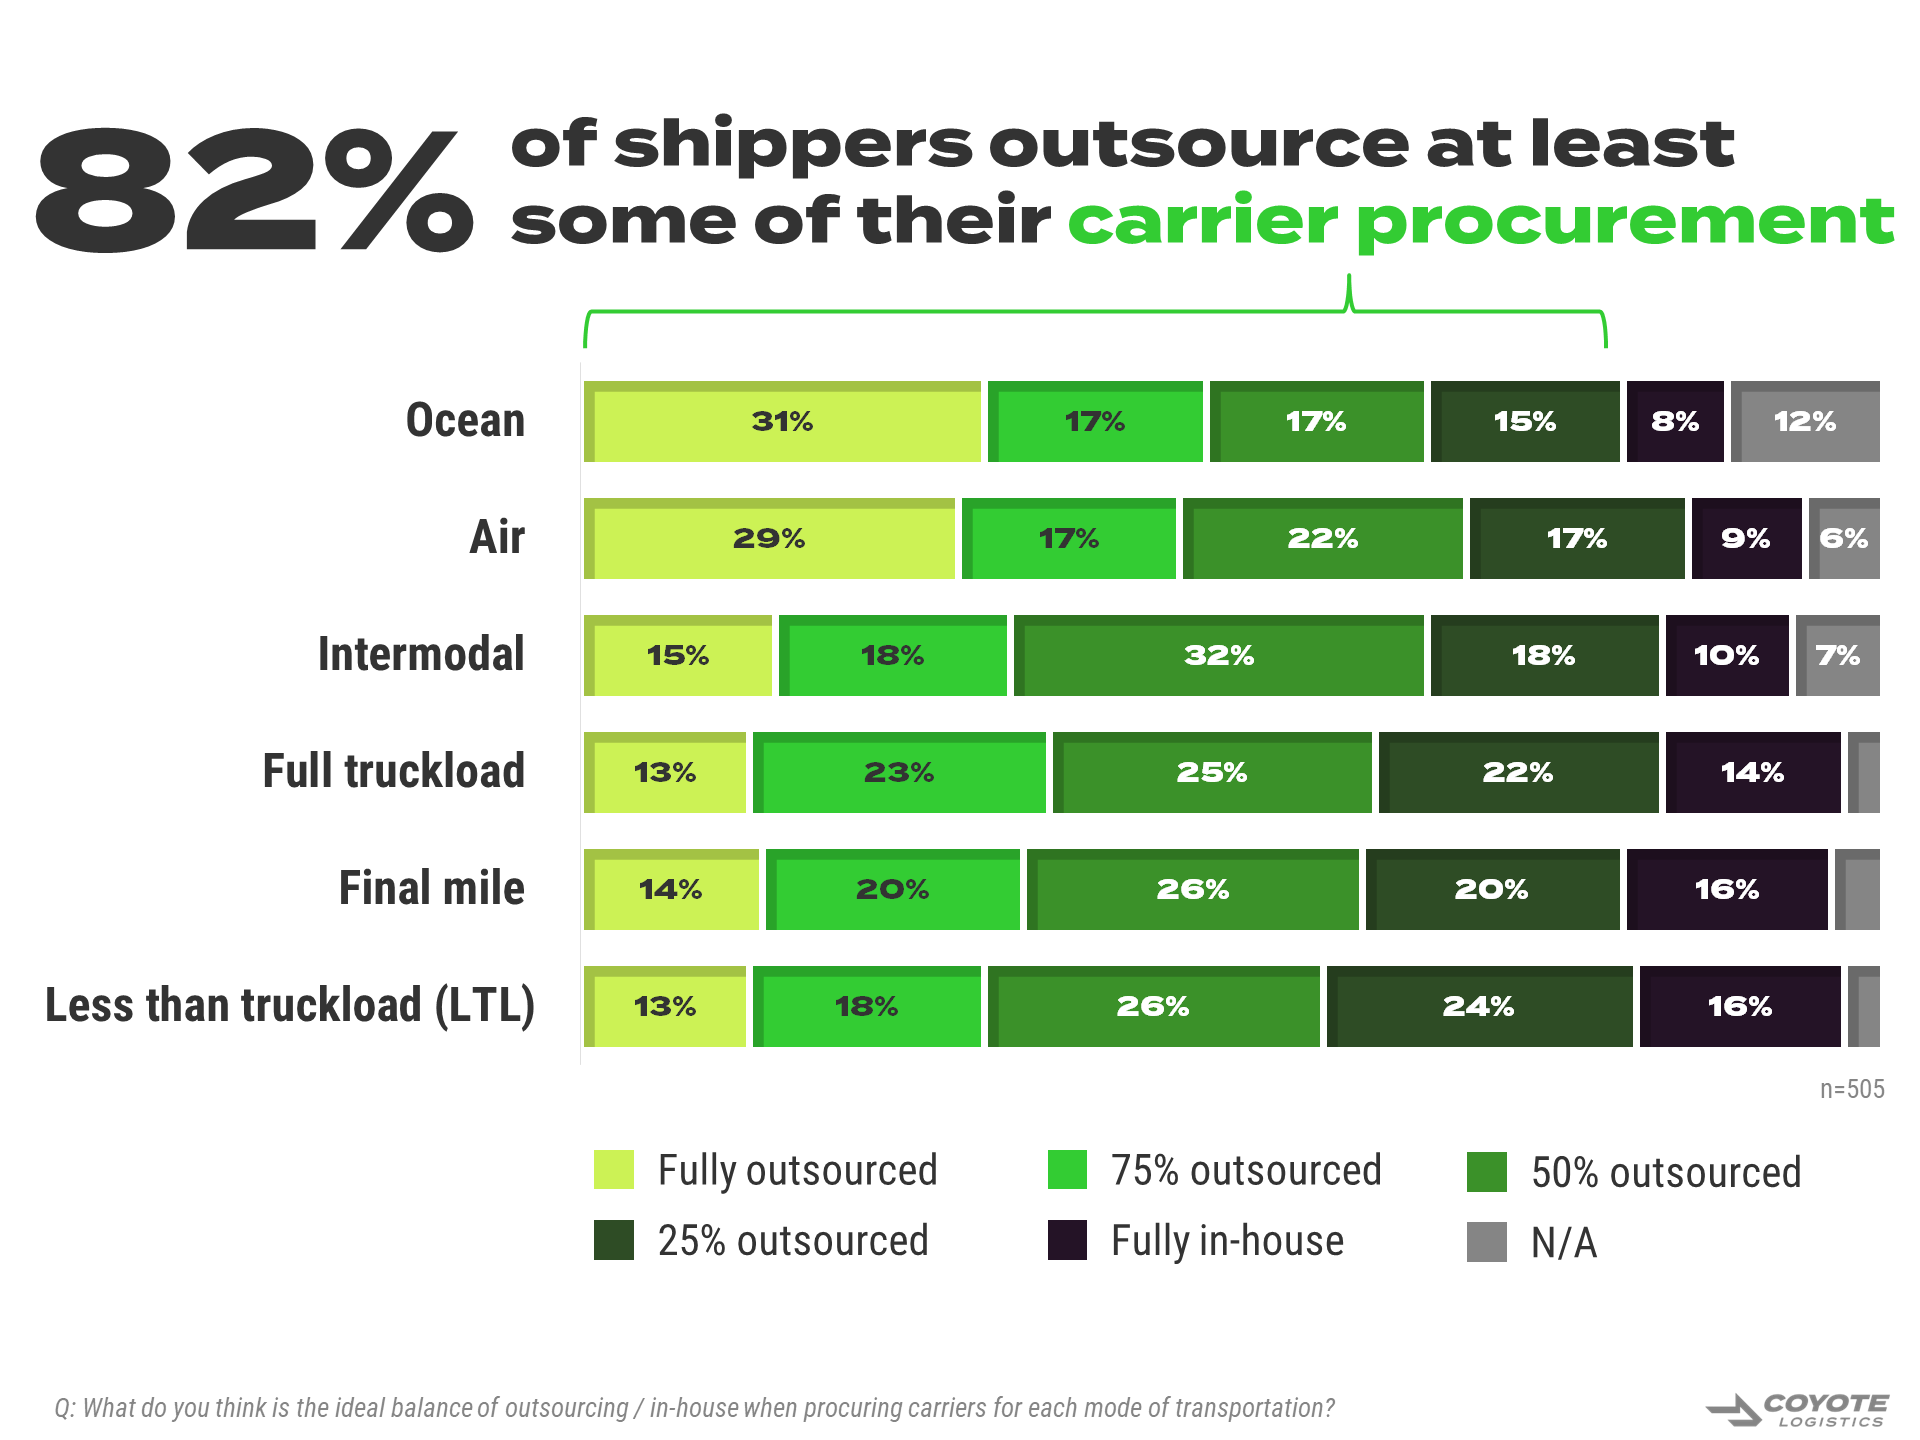 80% de los transportistas subcontratan al menos parte de su adquisición de transportistas